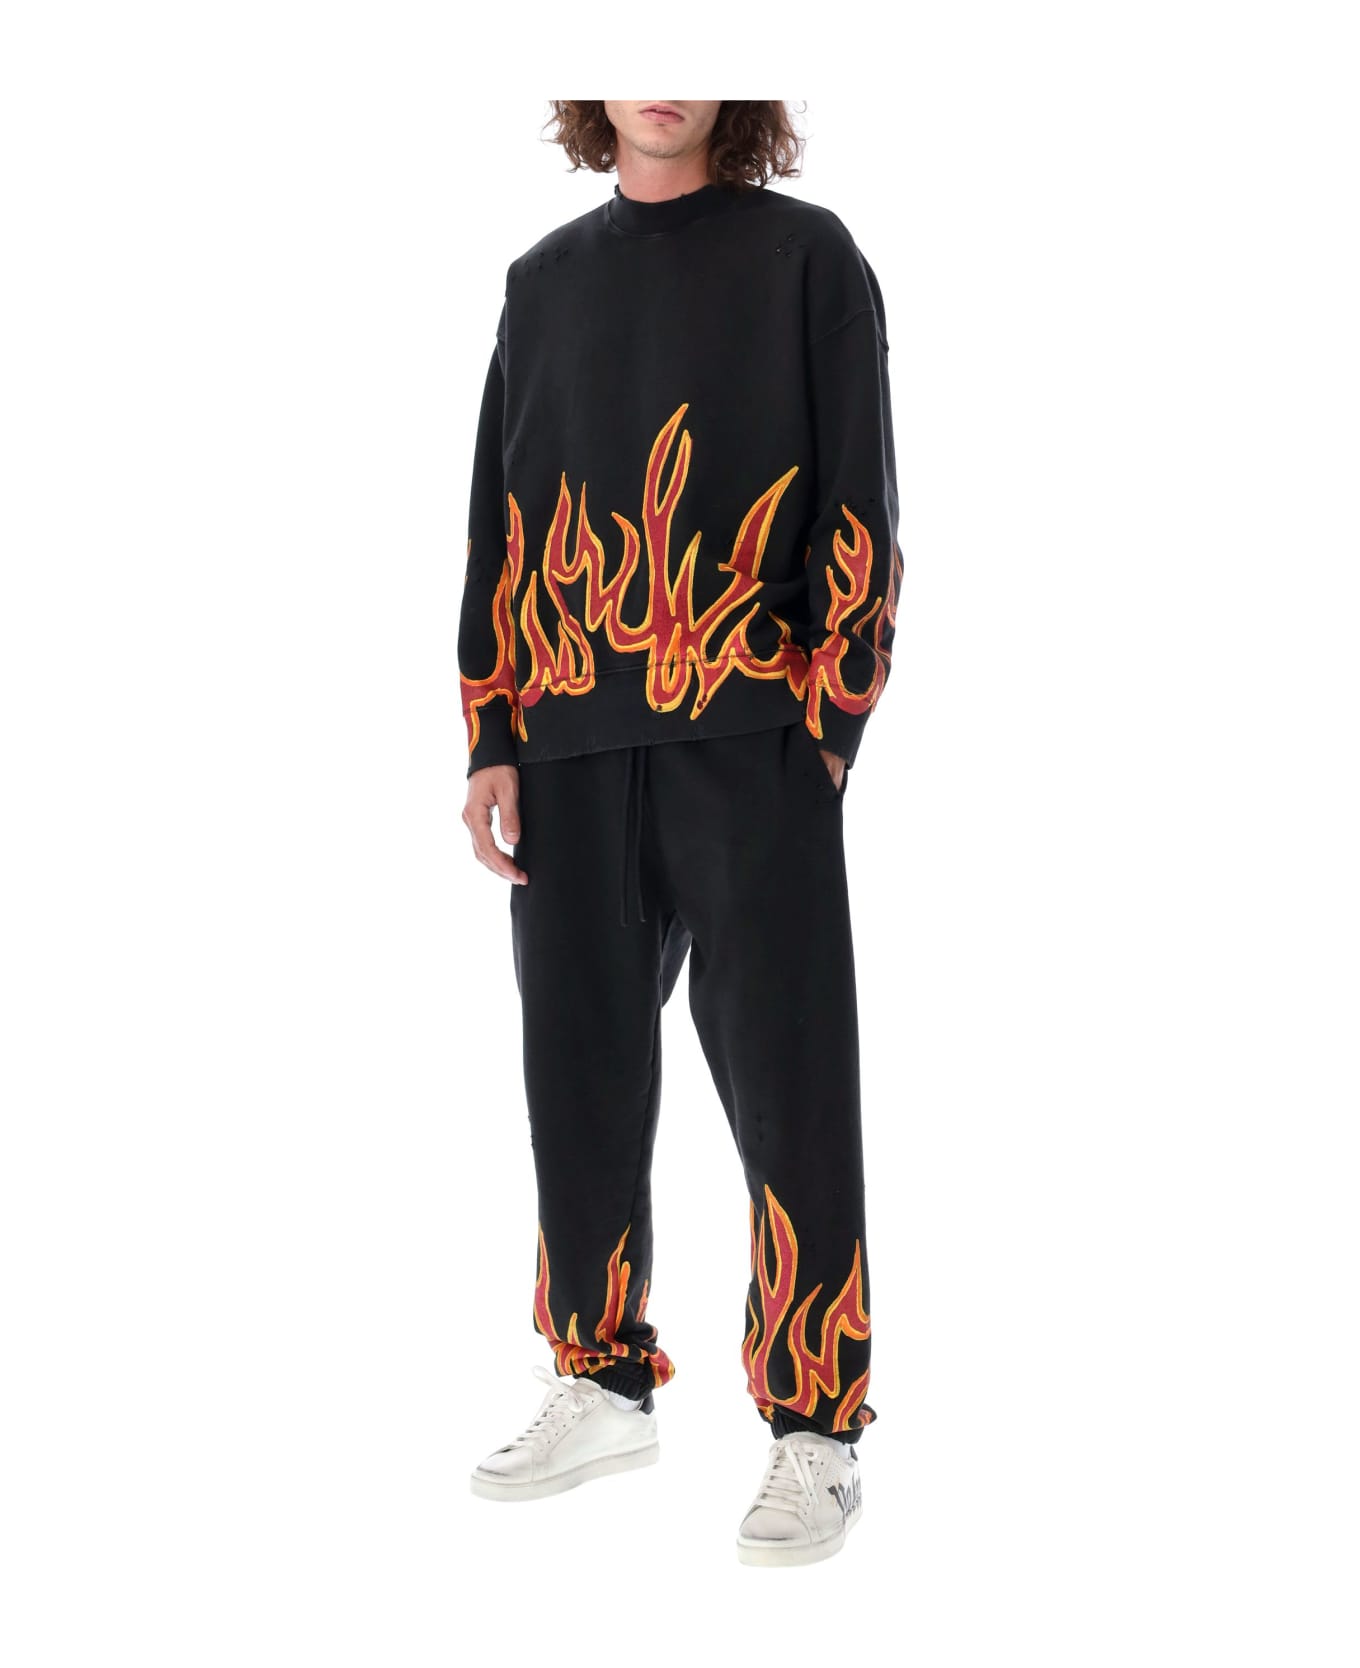 Palm Angels Garment Dye Graffiti Flames Sweatpants - Black